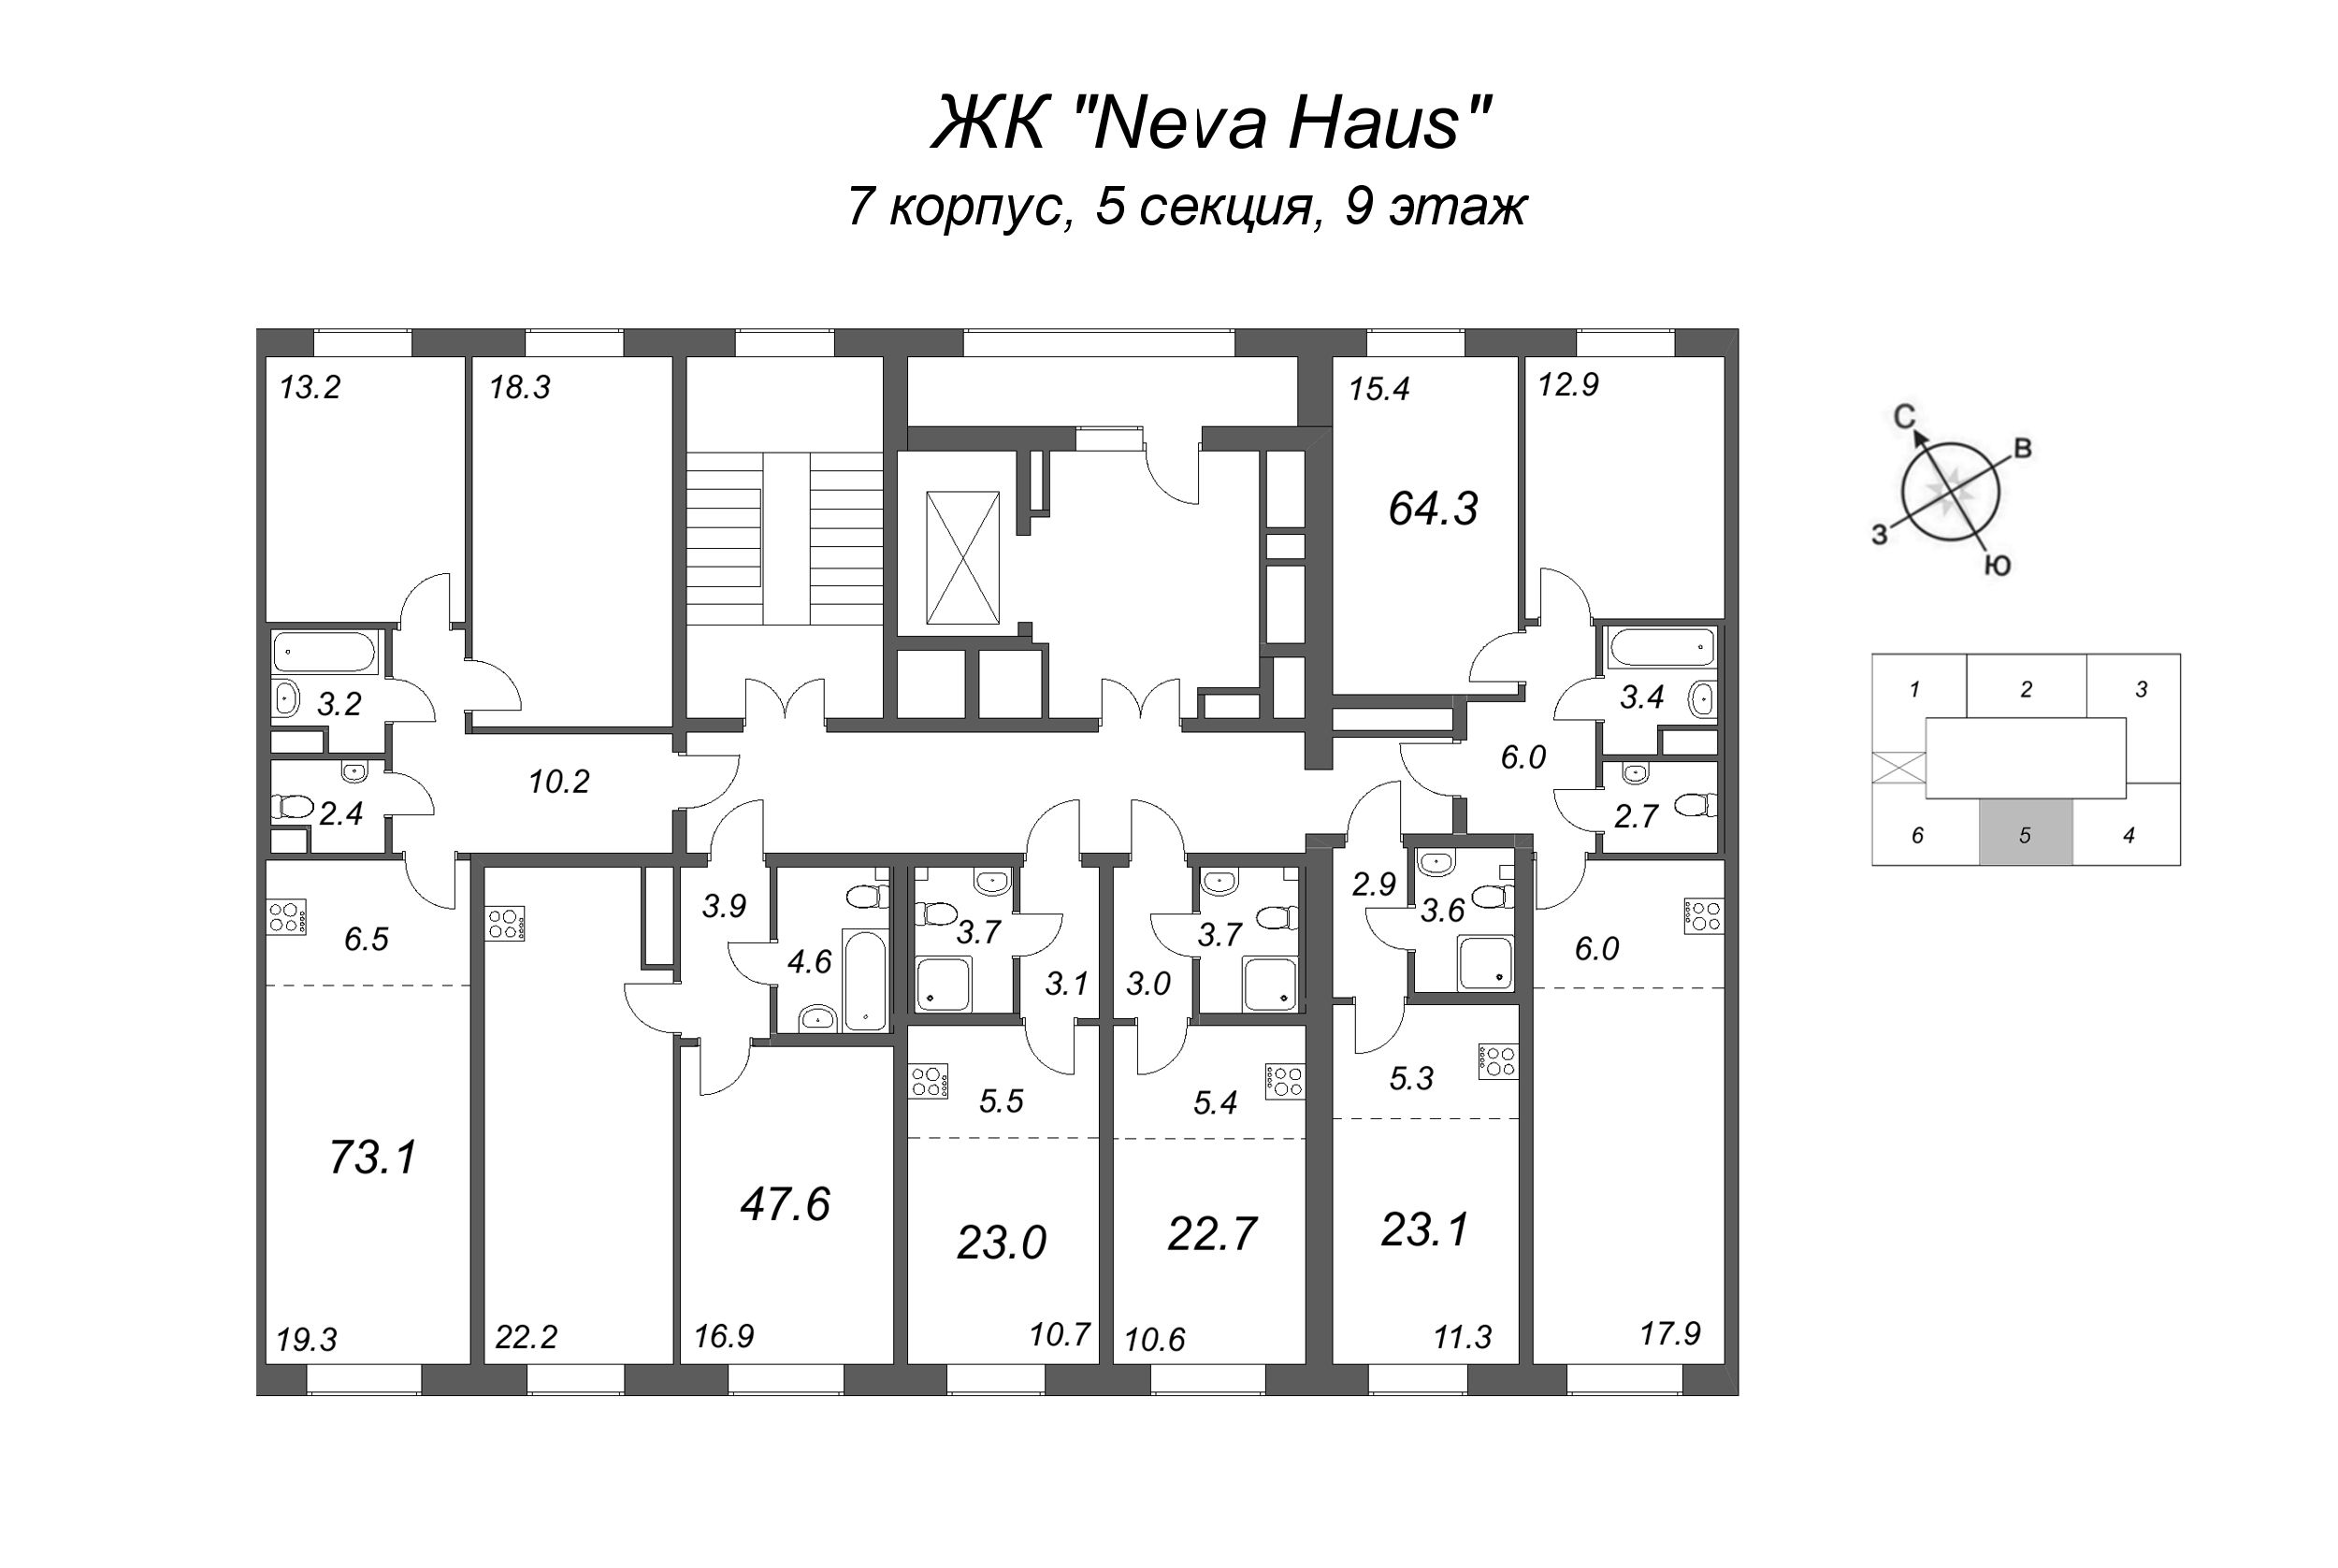 2-комнатная (Евро) квартира, 47.4 м² в ЖК "Neva Haus" - планировка этажа